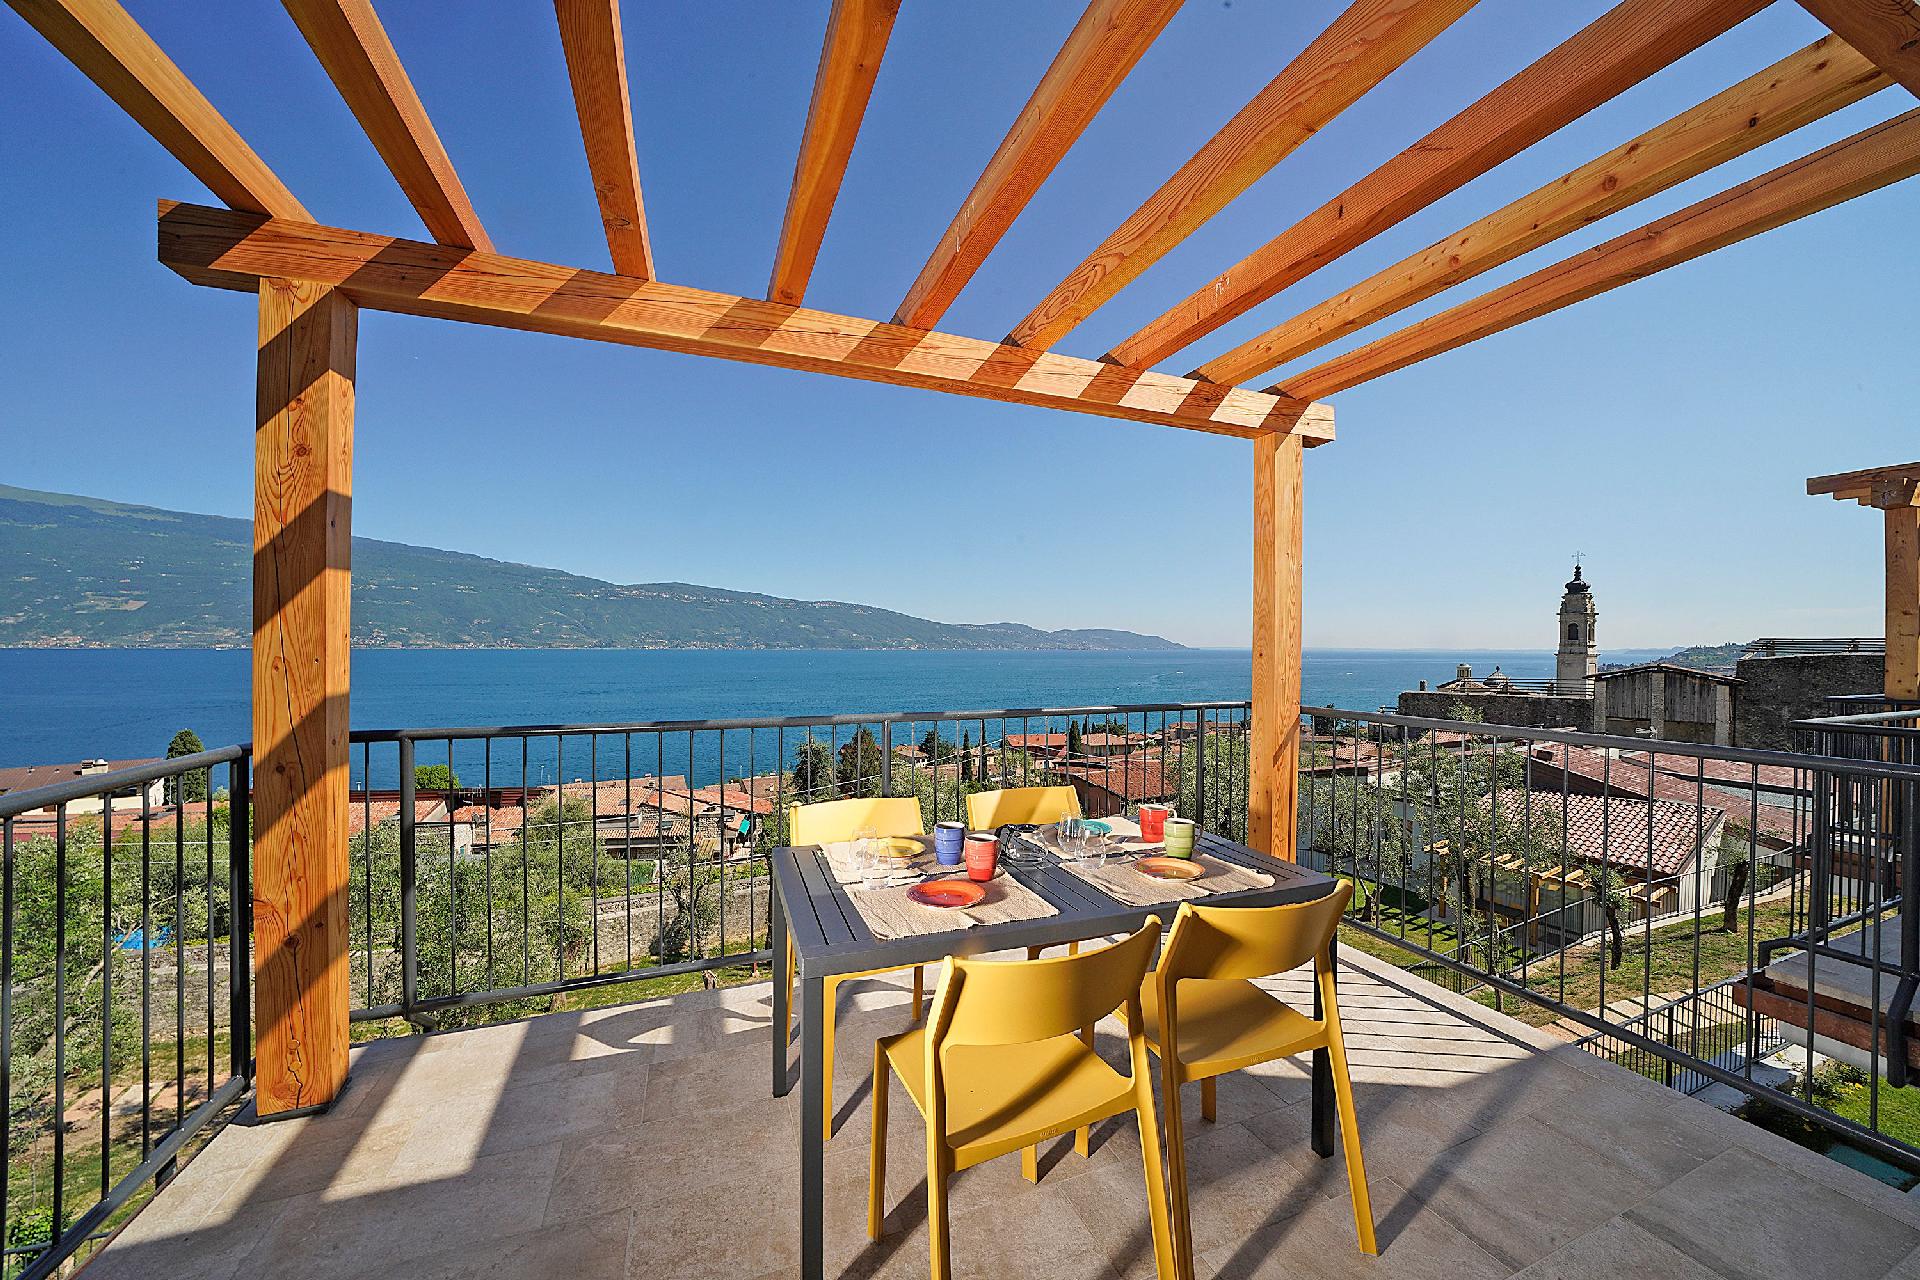 Ferienwohnung für 4 Personen ca. 65 m² i Ferienhaus in Italien